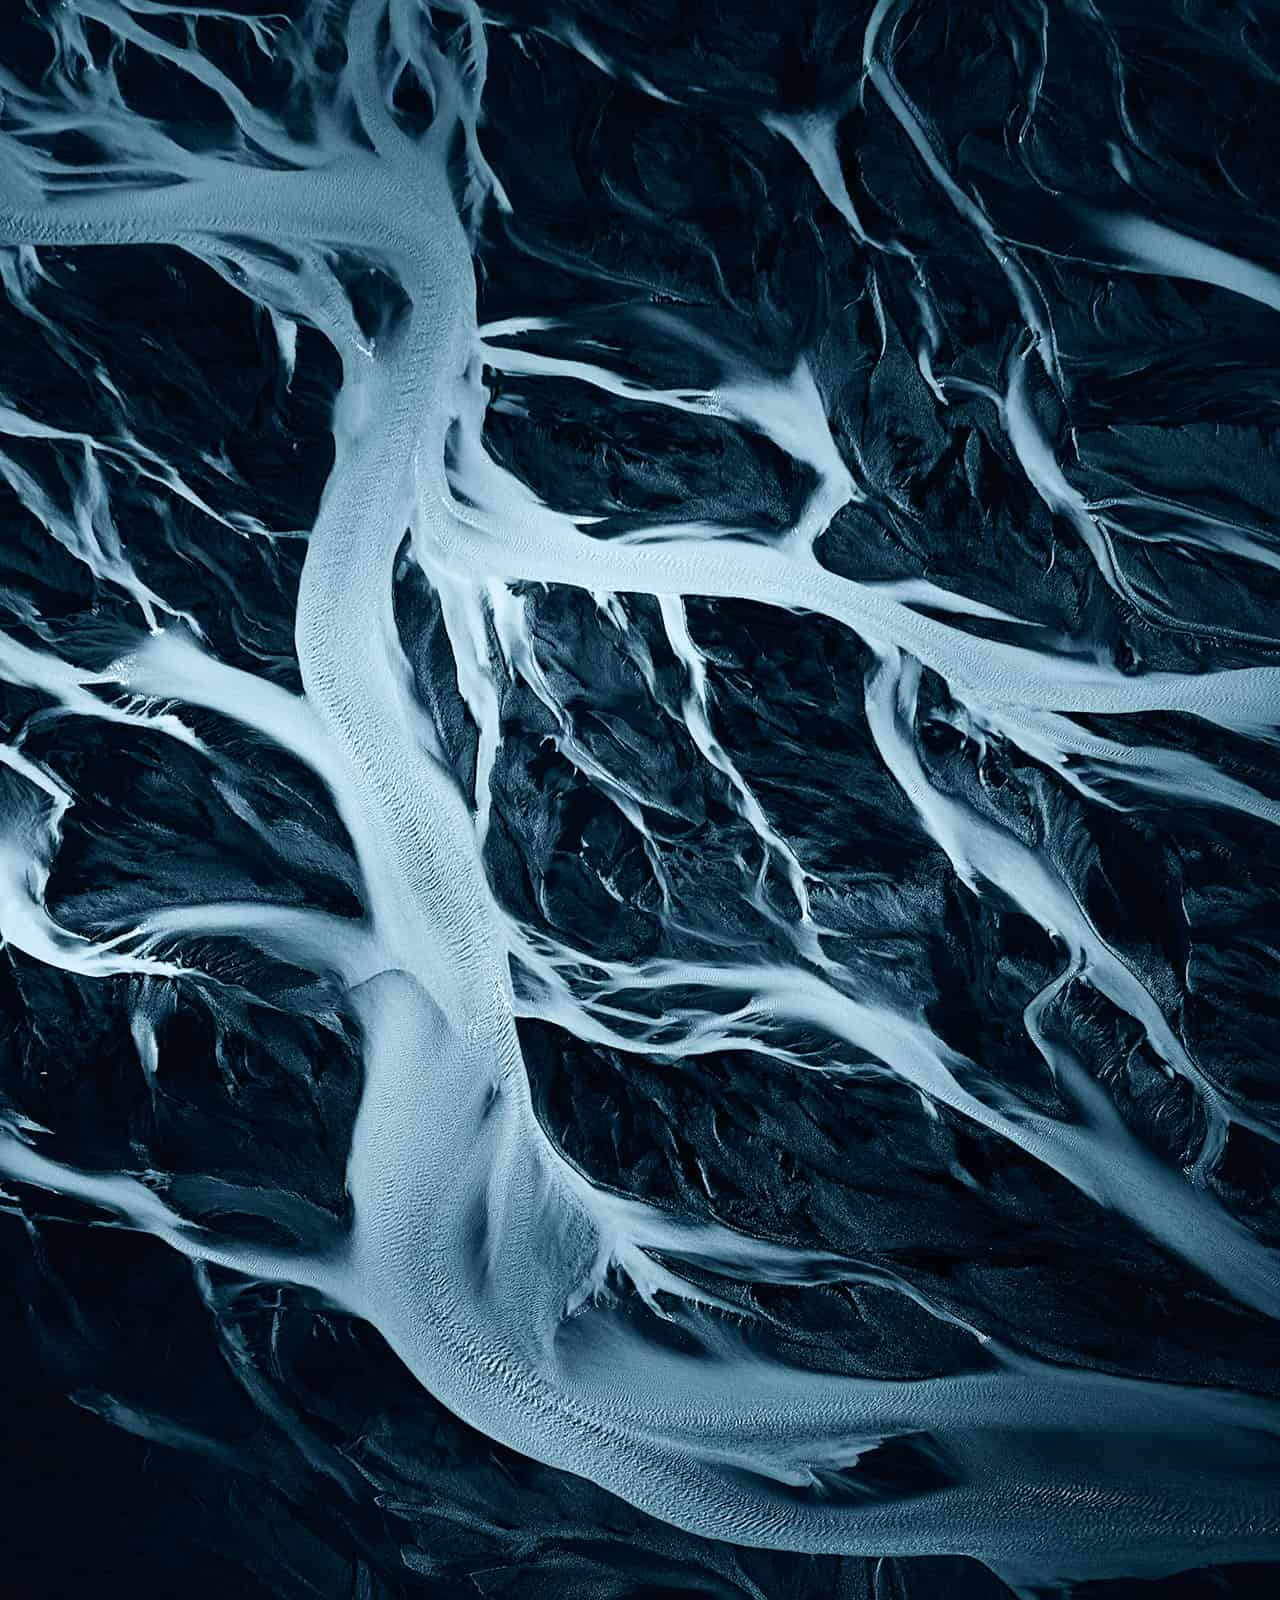 "Veins of the Glacier" Bilddrucke in höchster Qualität mit der ChromaLuxe Technologie